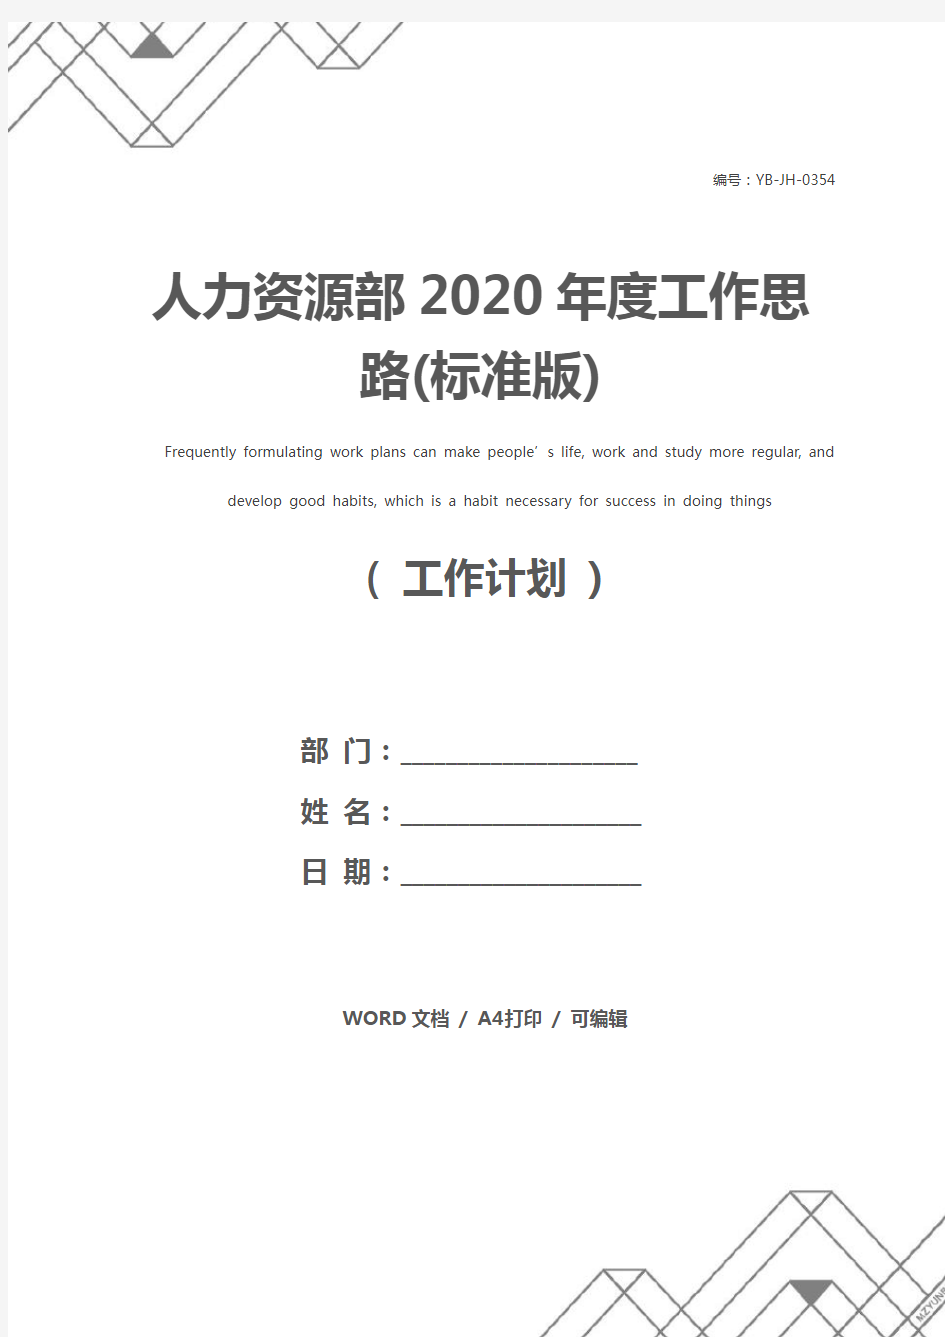 人力资源部2020年度工作思路(标准版)